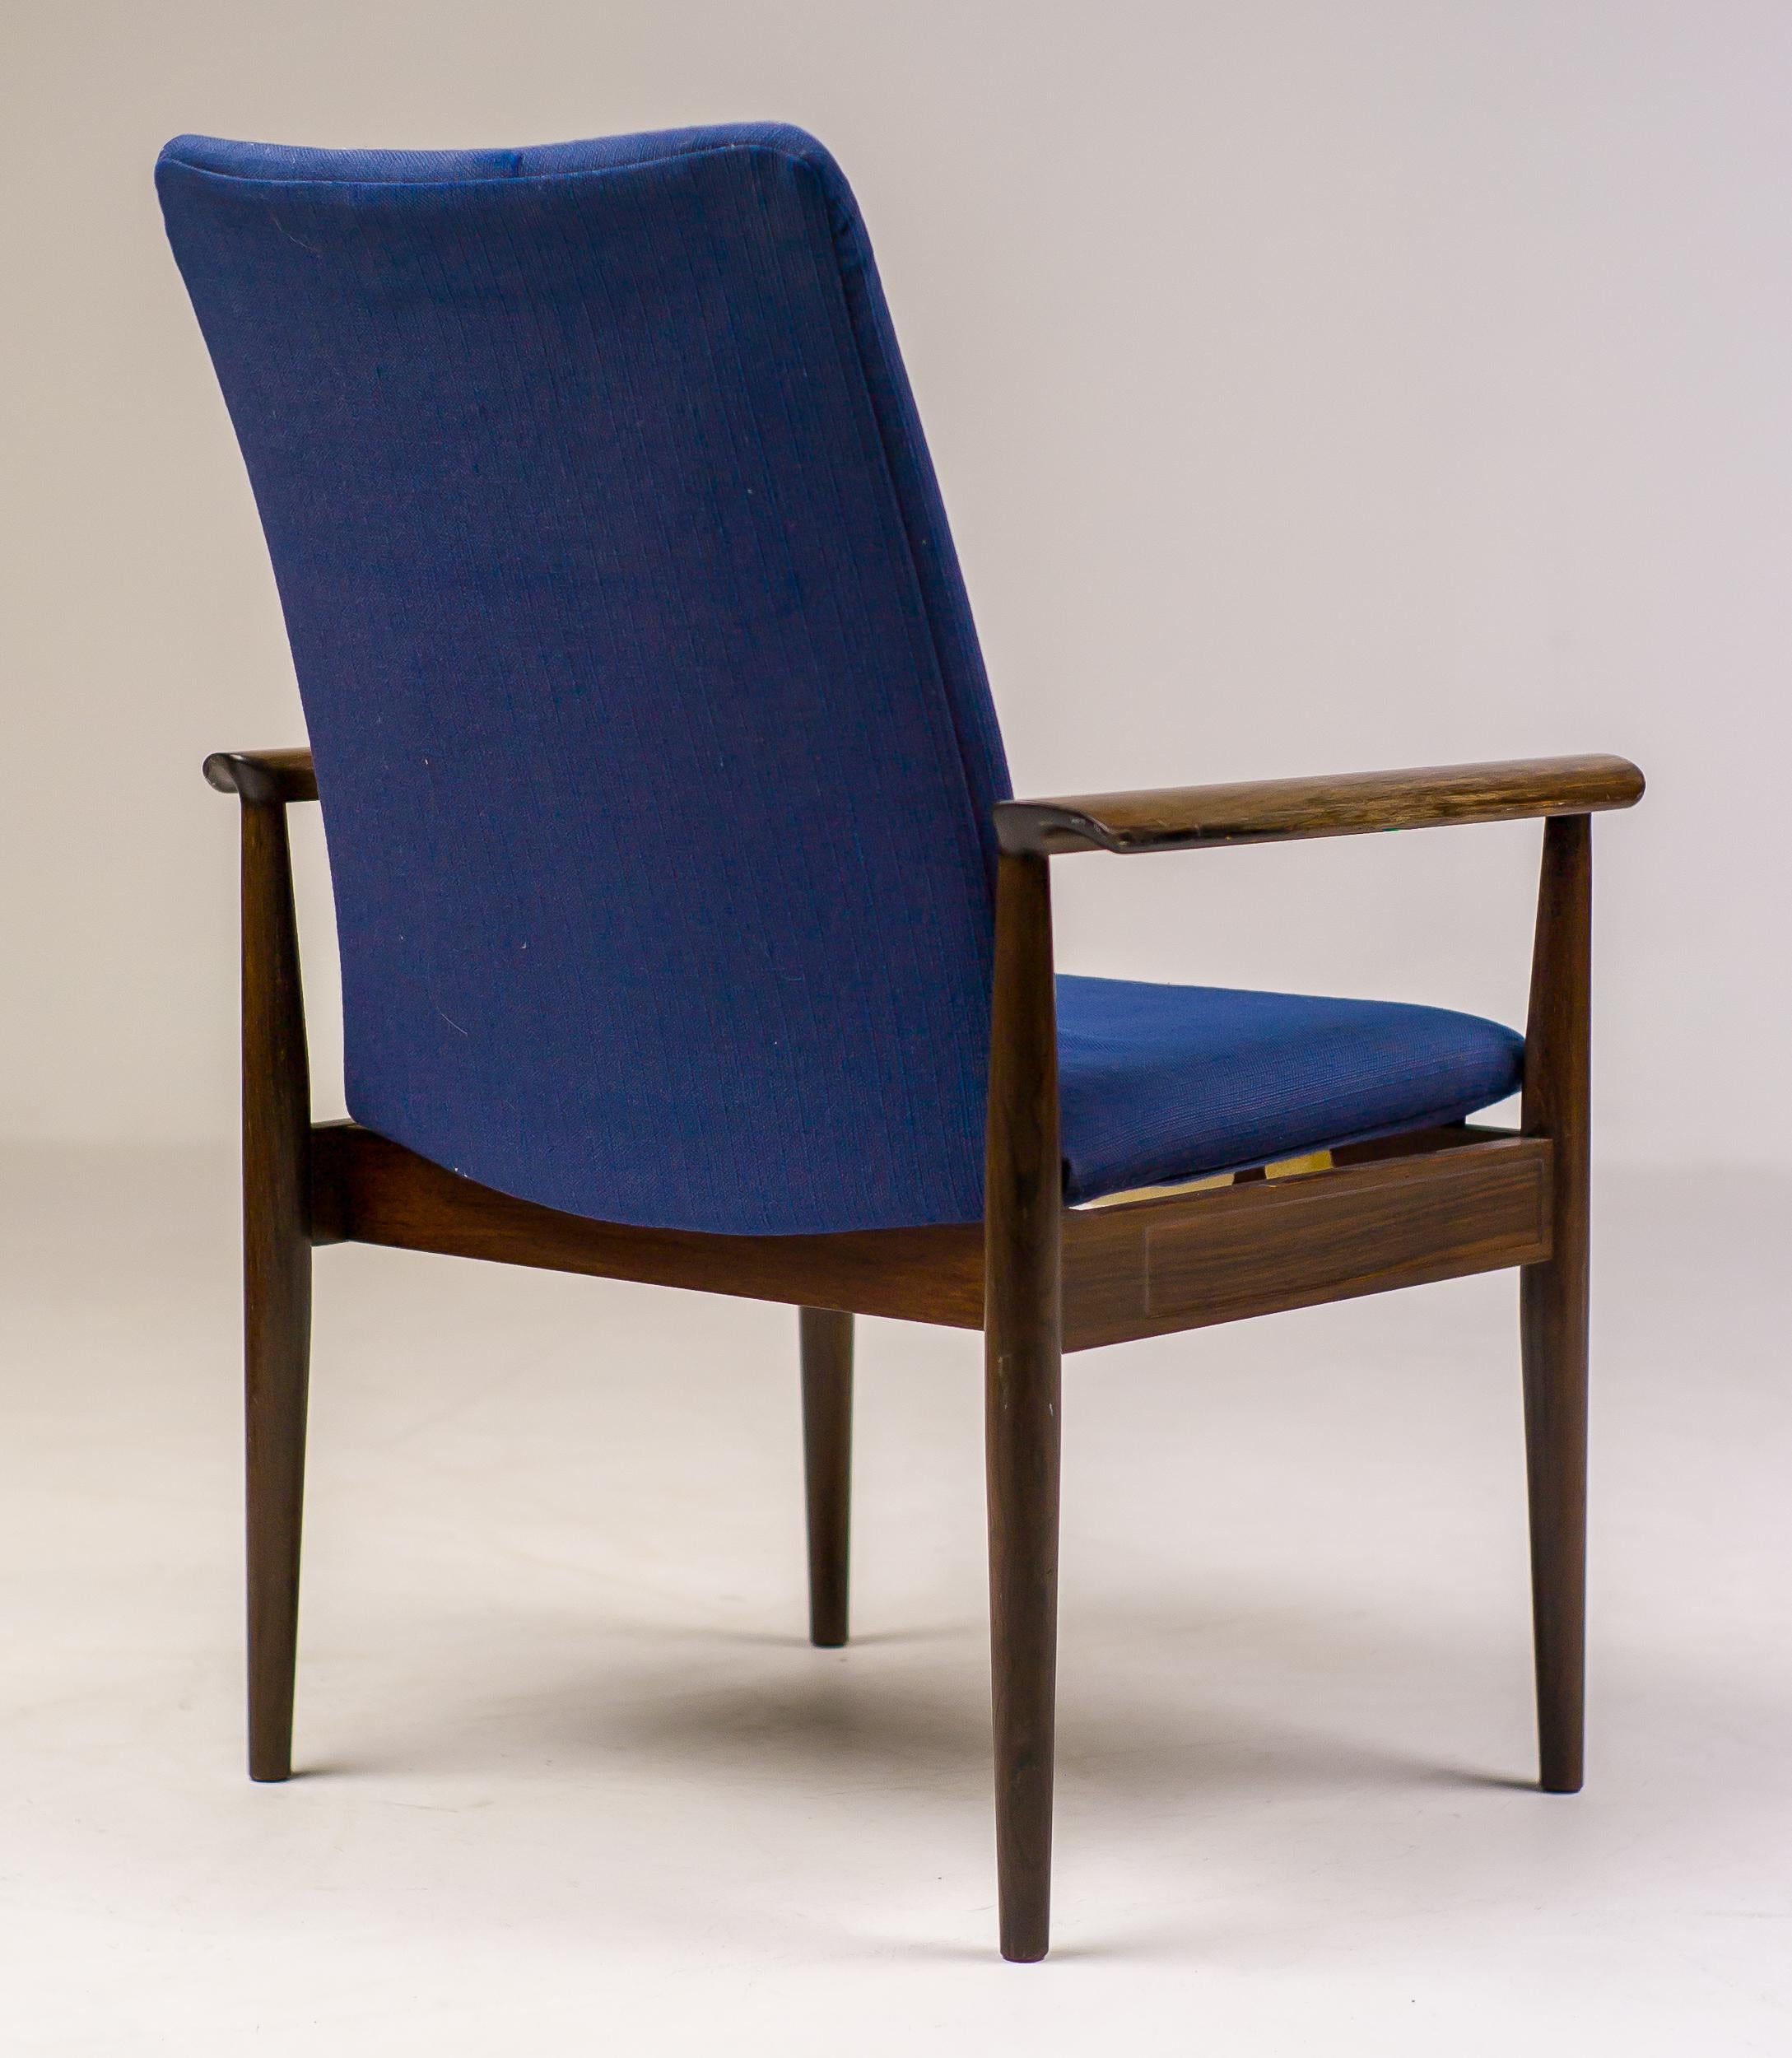 Chaise diplomatique distinguée en bois de rose, conçue par Finn Juhls et fabriquée par Cado.
En parfait état d'origine, marqué d'une étiquette argentée Finn Juhls.

Le tissu et la mousse sont usés, les ressorts en acier sont encore en excellent